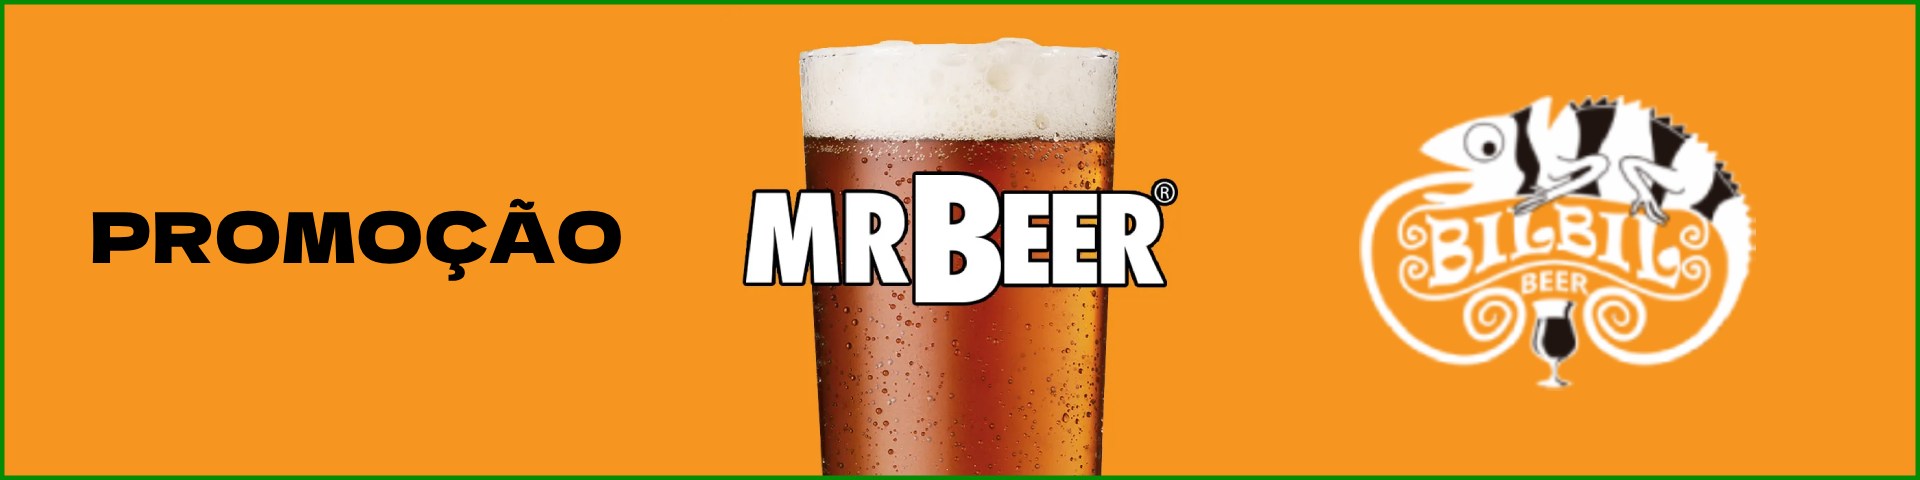 Promoção Mr Beer